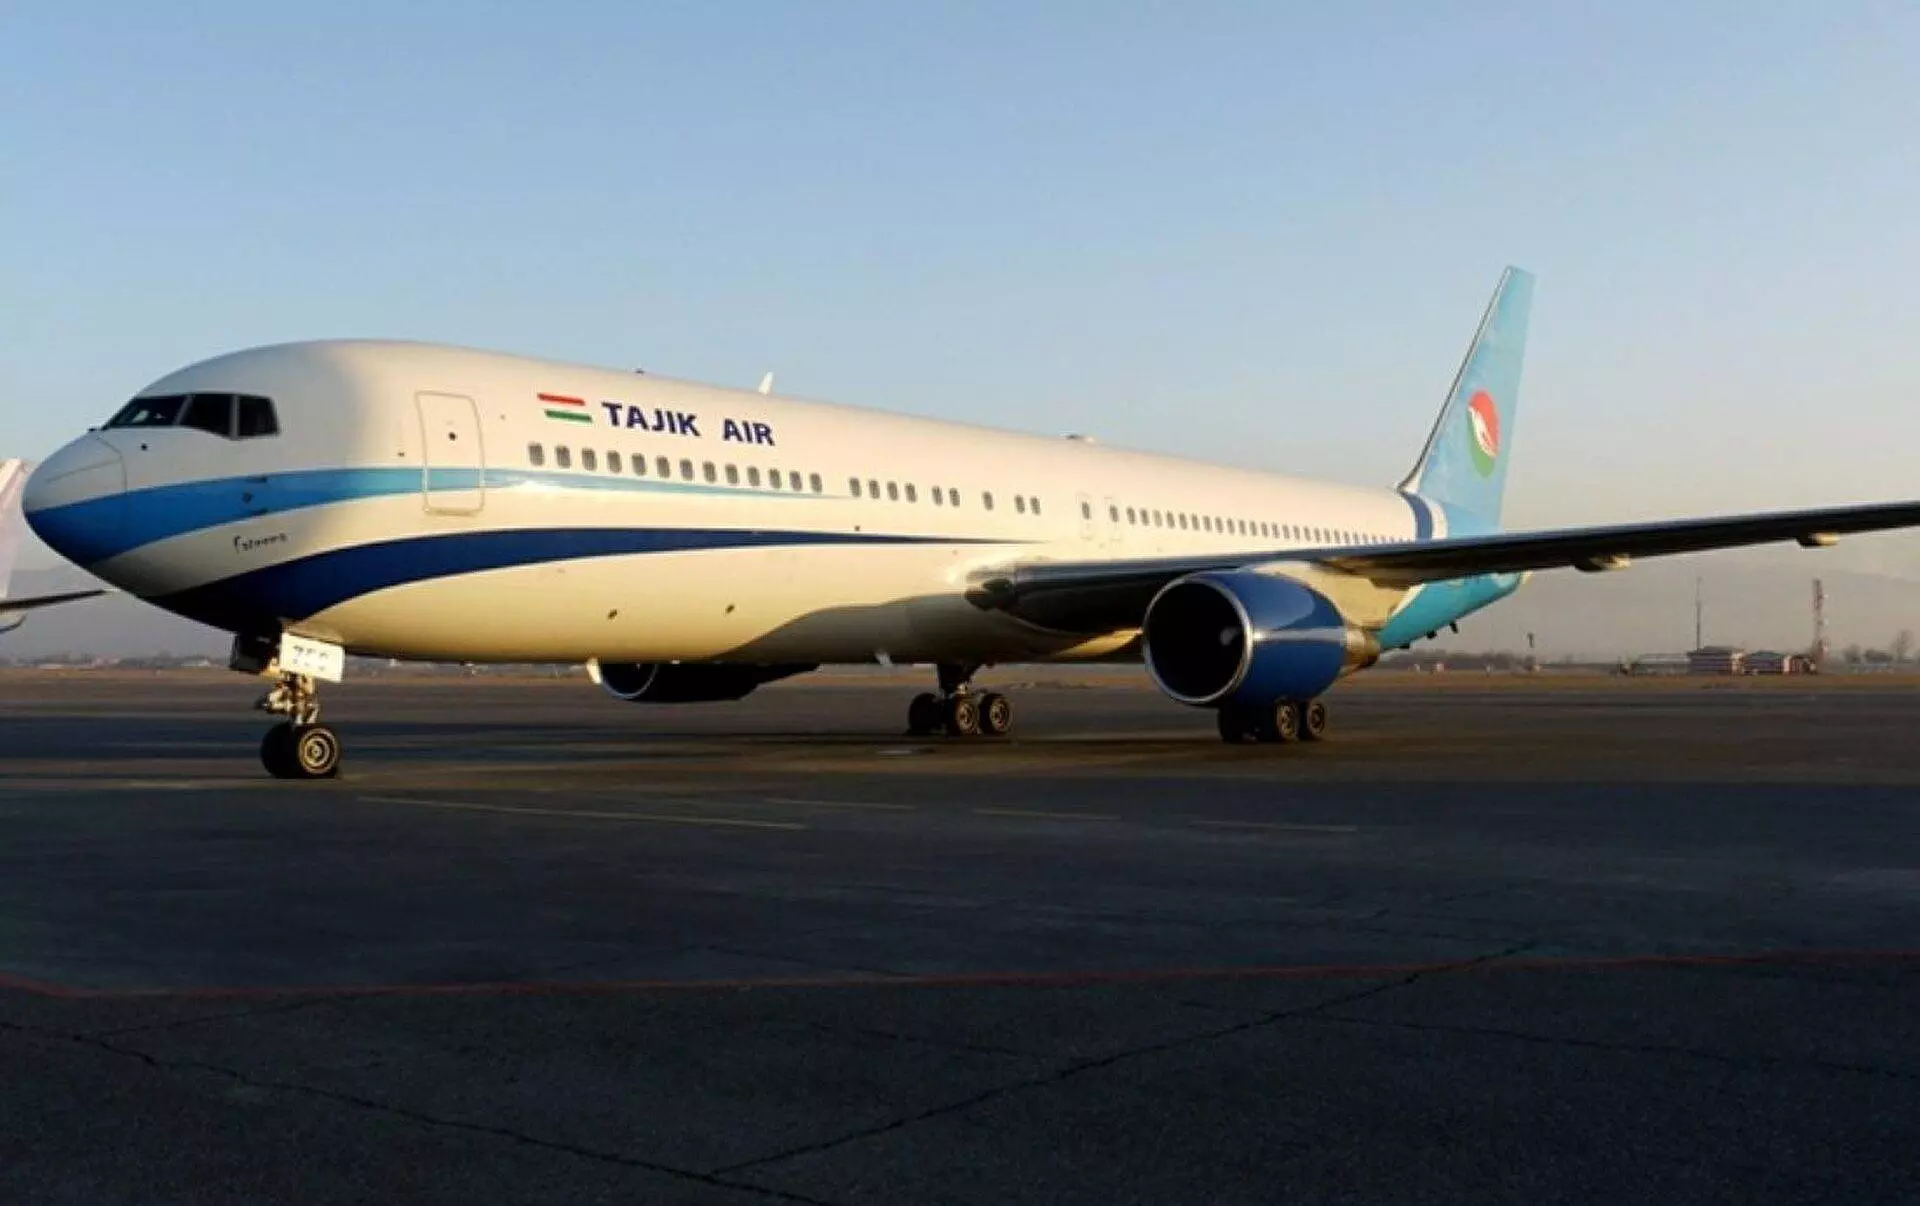 Таджик эйр (tajik air): обзор национальной авиакомпании таджикистана, направления перелетов таджикских авиалиний, отзывы пассажиров